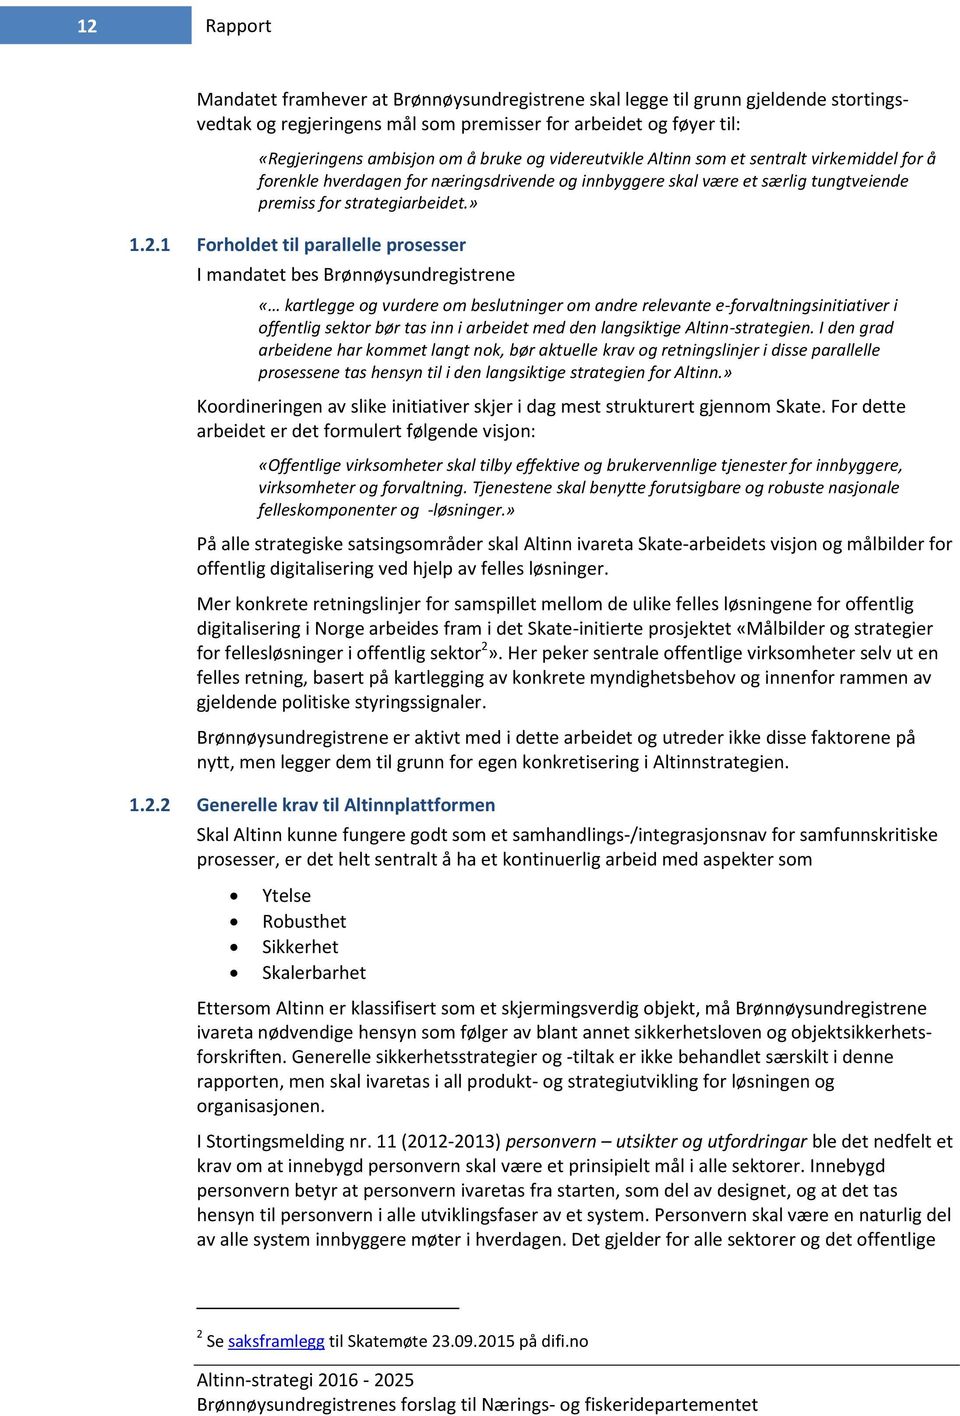 1 Forholdet til parallelle prosesser I mandatet bes Brønnøysundregistrene «kartlegge og vurdere om beslutninger om andre relevante e-forvaltningsinitiativer i offentlig sektor bør tas inn i arbeidet